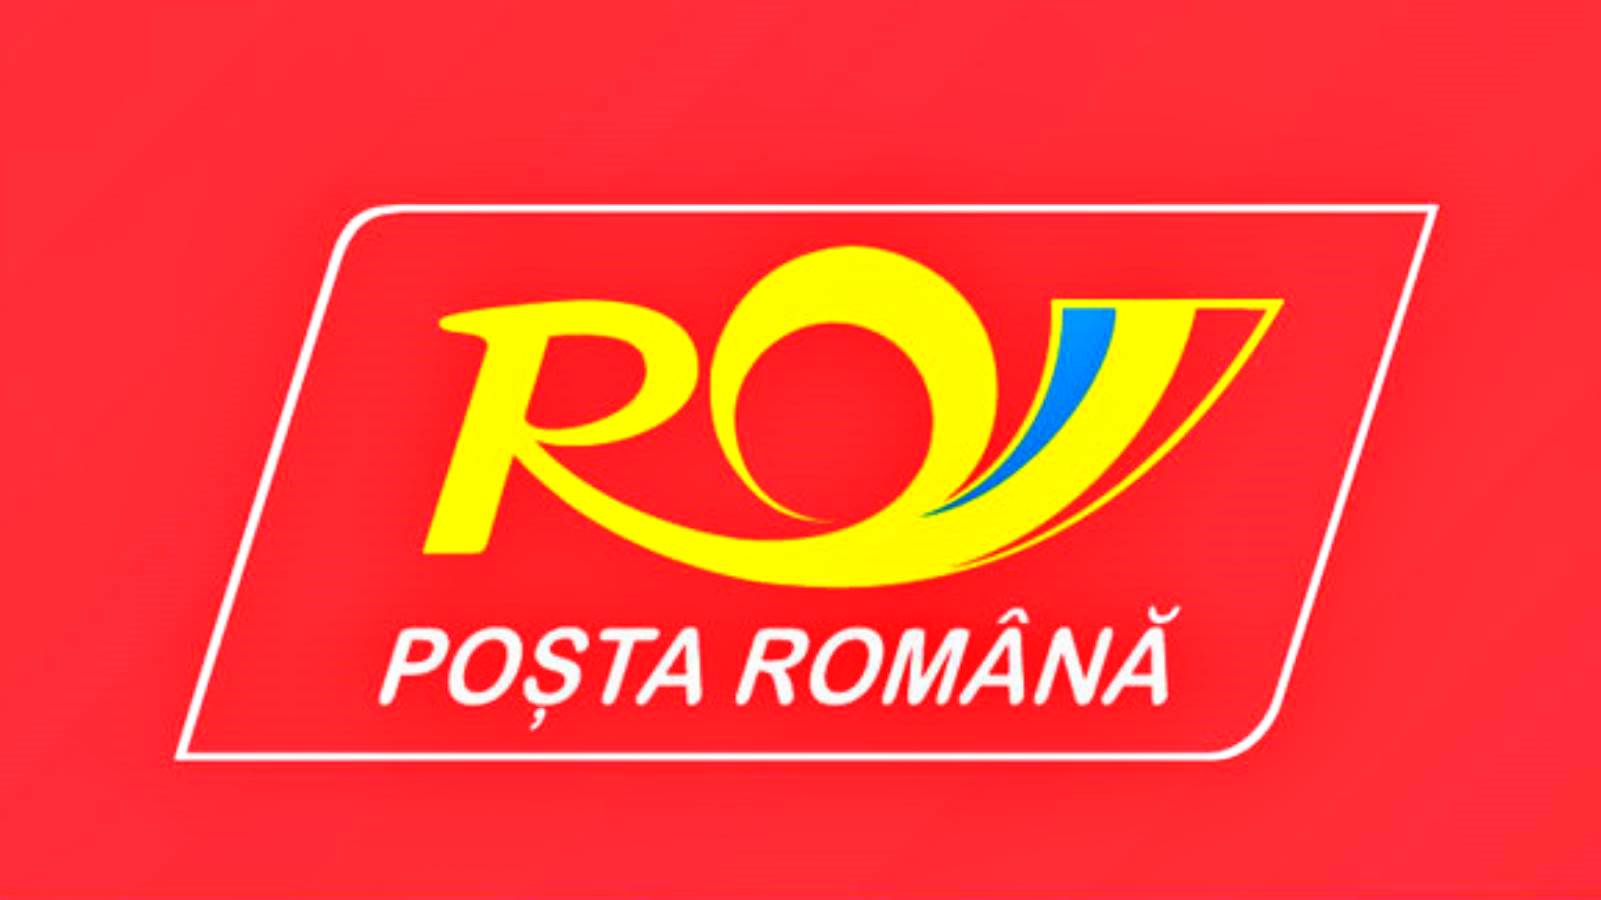 Avviso postale rumeno relativo agli oggetti vietati nei pacchi